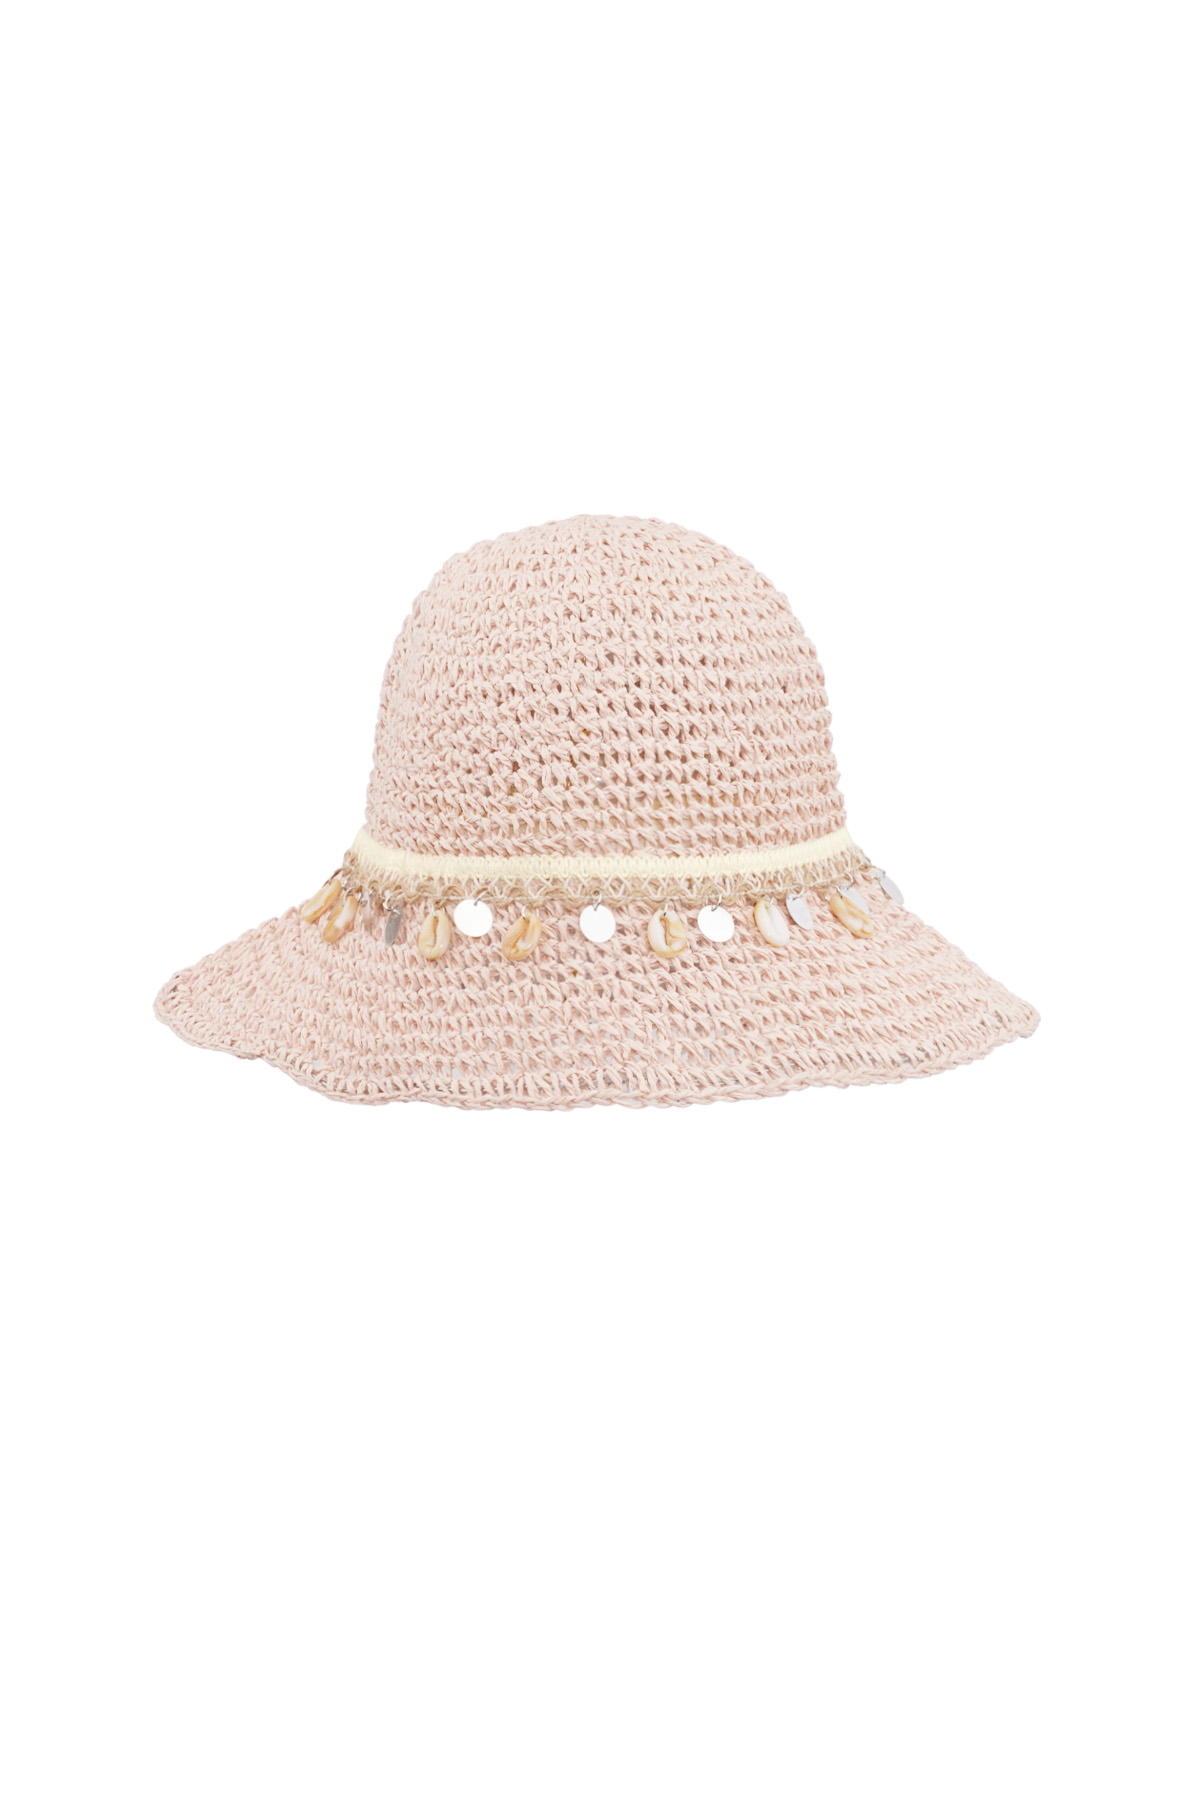 Deniz kabuklu plaj şapkası - pembe h5 